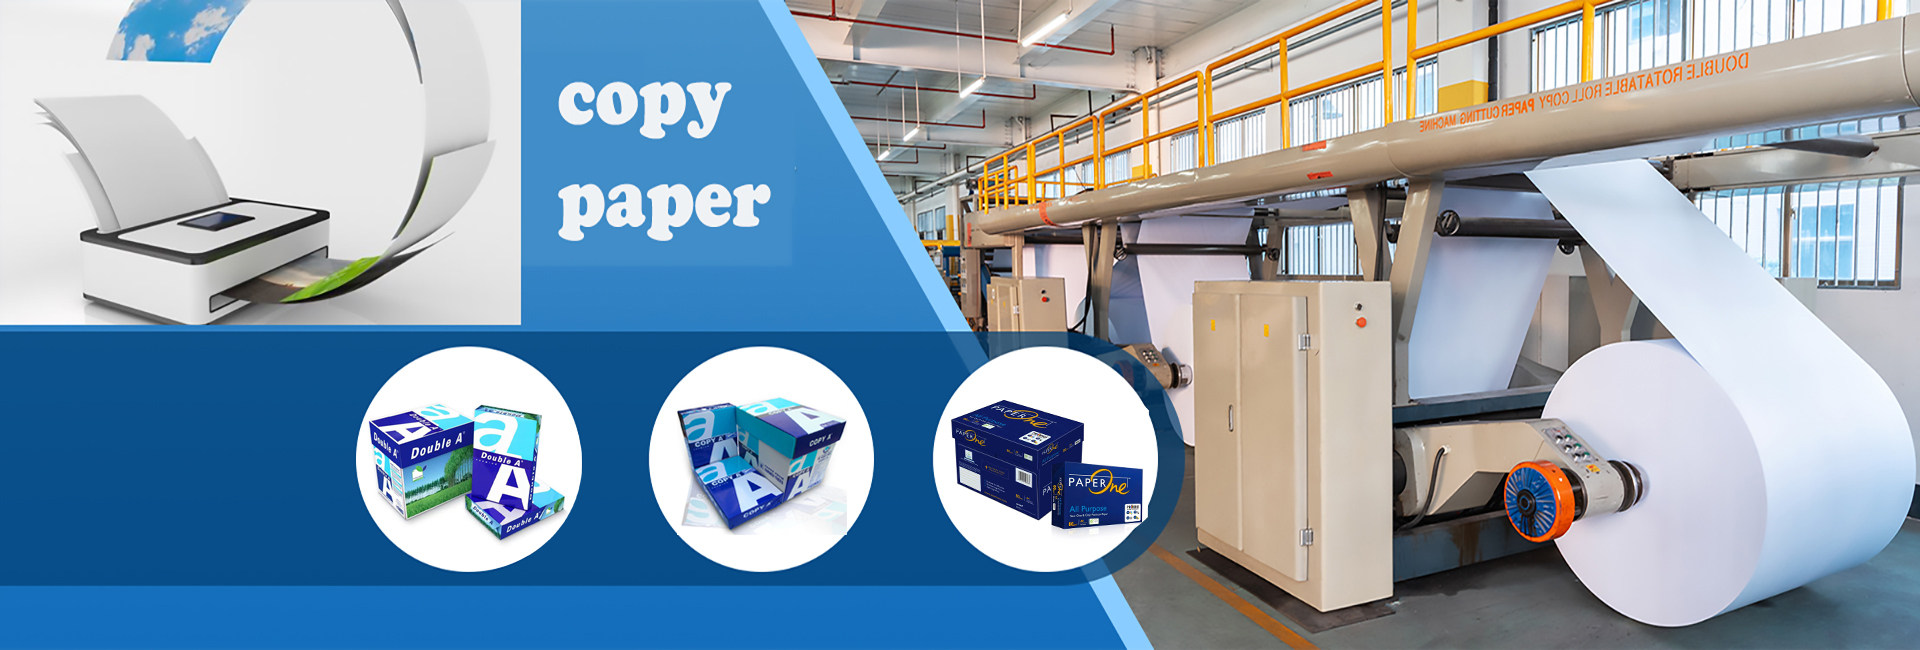 Hebei Leyin Paper Industry Co. Ltd